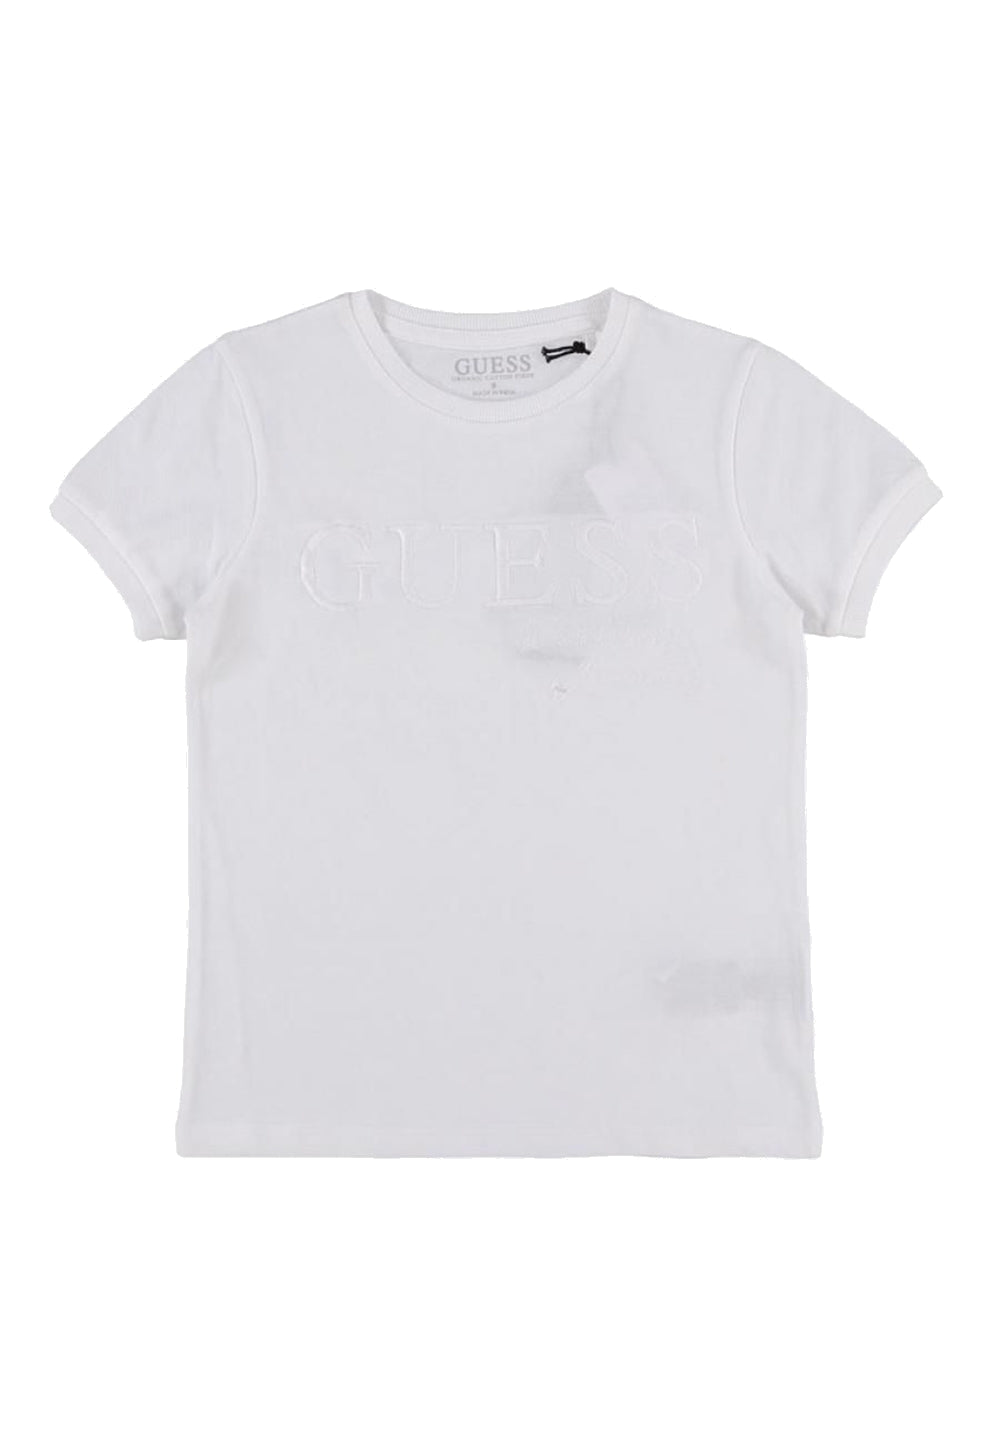 T-shirt bianca per bambino - Primamoda kids